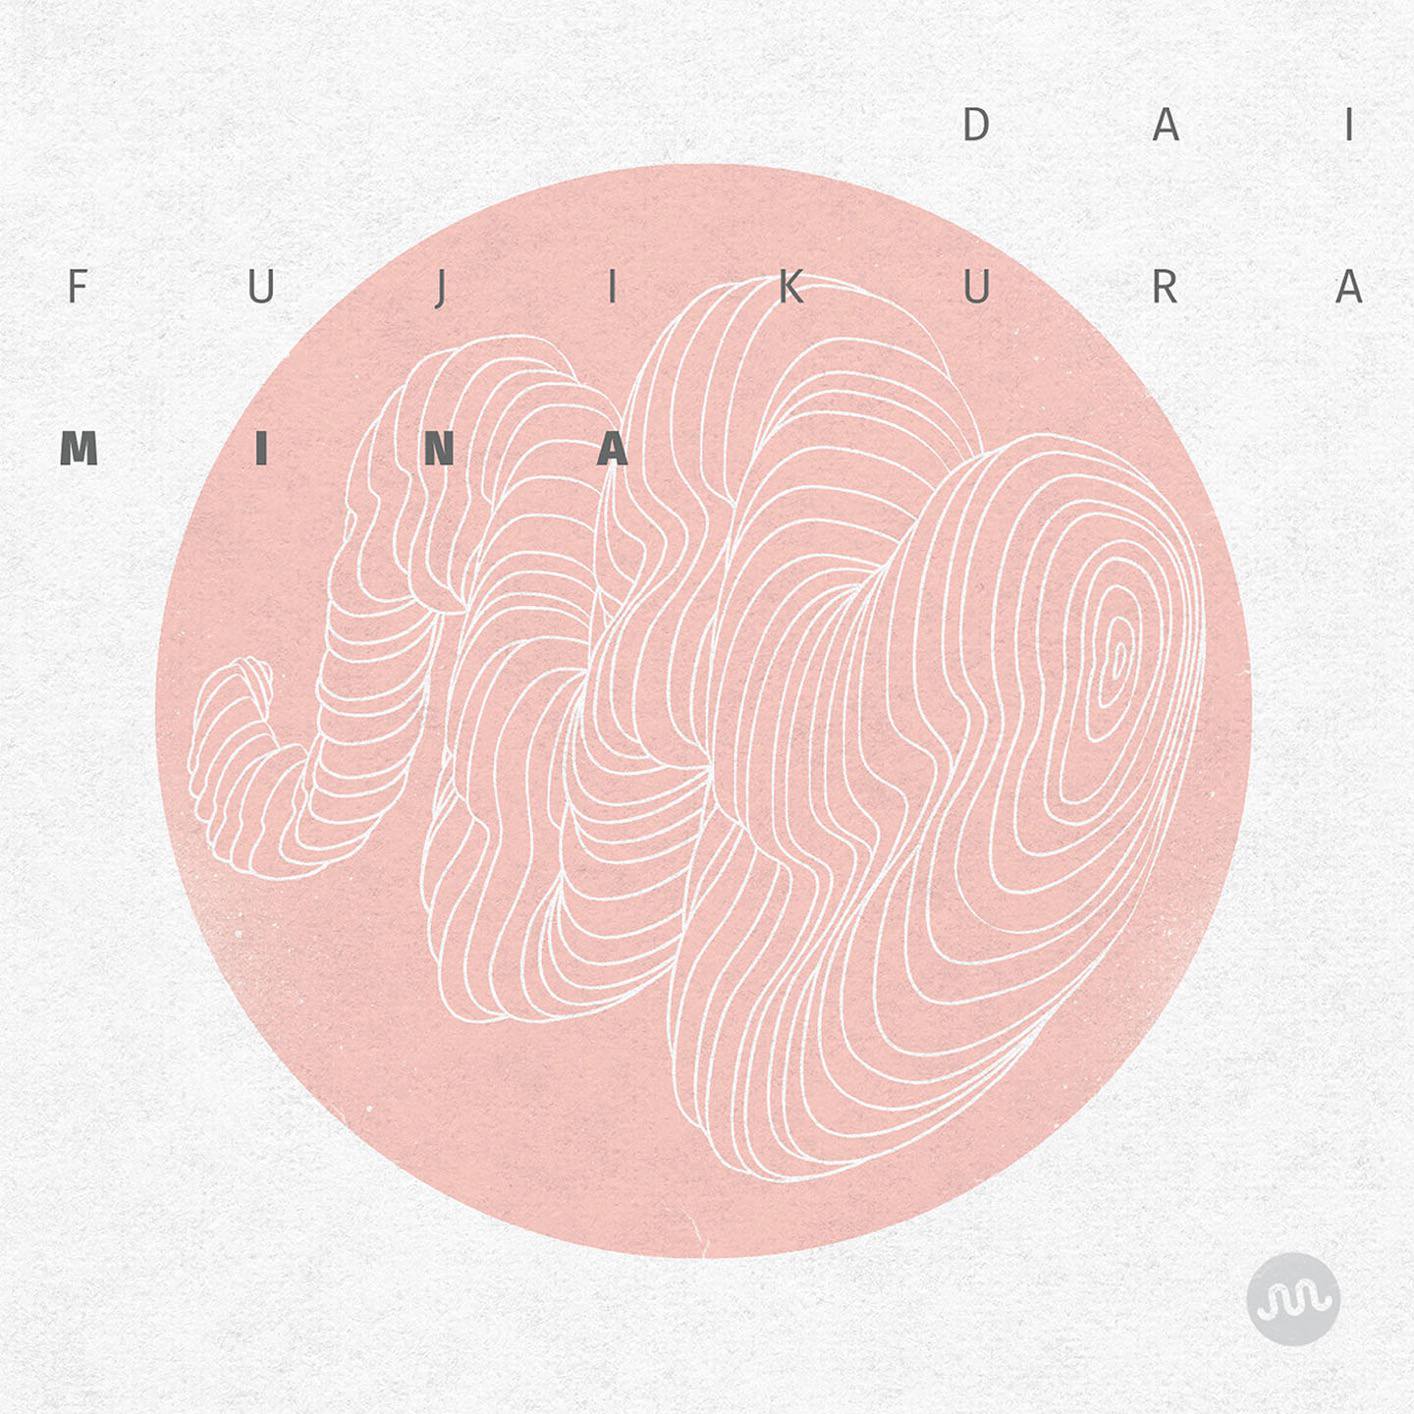 Dai Fujikura (藤倉大) - Mina (2015) [FLAC 24bit/48kHz]